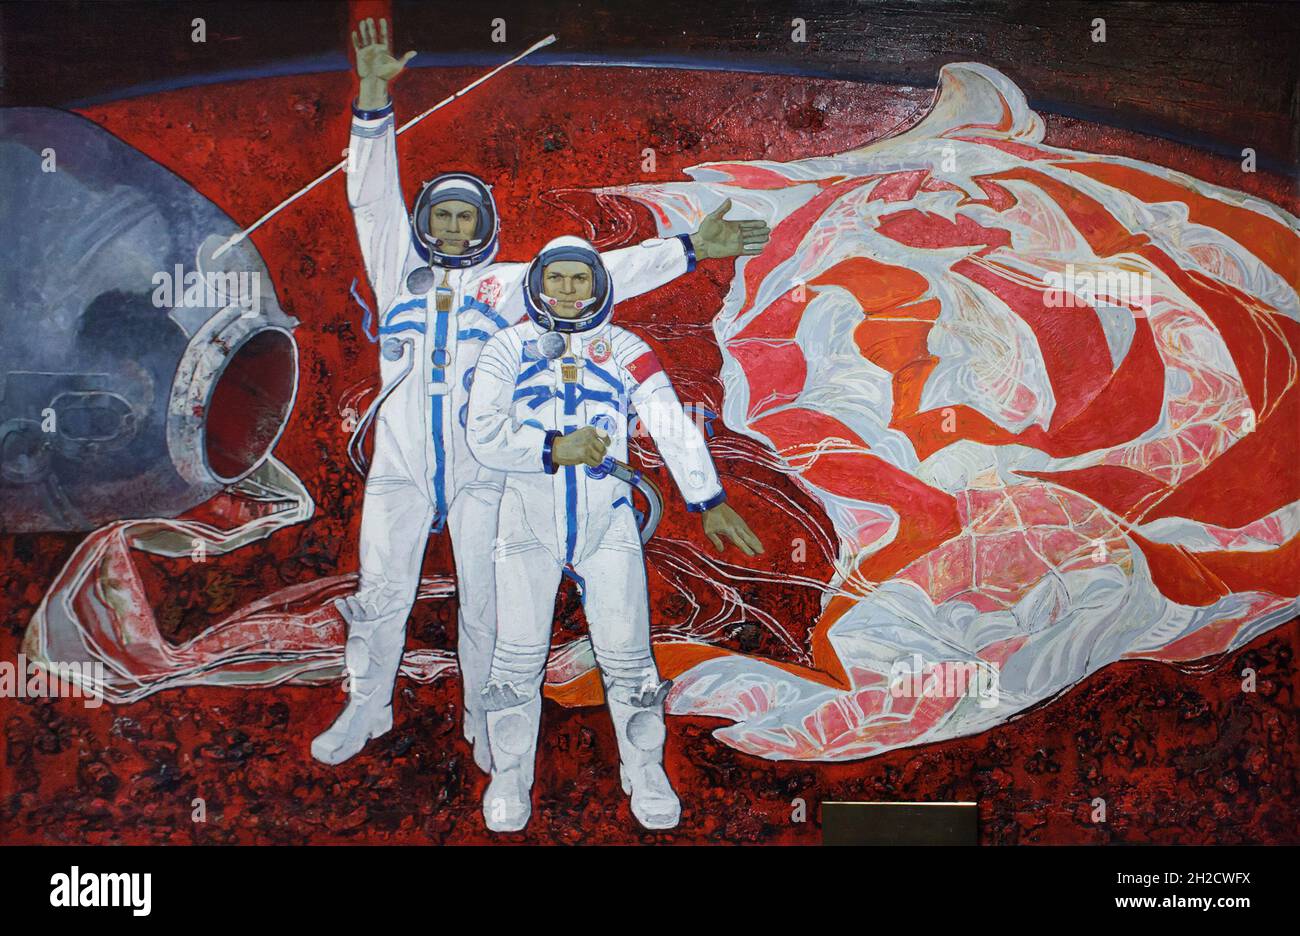 Le cosmonaute tchécoslovaque Vladimír Remek (L) et le cosmonaute soviétique Alexei Gubarov (R) représentés dans la peinture du cosmonaute soviétique Alexei Leanov (1981) exposée au Musée national (Národní muzeum) à Prague (République tchèque).Vladimír Remek et Alexei Gubarov étaient les membres de l'équipage de la mission soviétique de 1978 'Soyuz 28'.Les cosmonautes sont représentés peu après l'atterrissage dans la steppe kazakhe près de la ville d'Arkalyk au Kazakhstan le 10 mars 1978.La peinture est en vue de la nouvelle exposition permanente du Musée national consacrée à l'histoire du XXe siècle. Banque D'Images